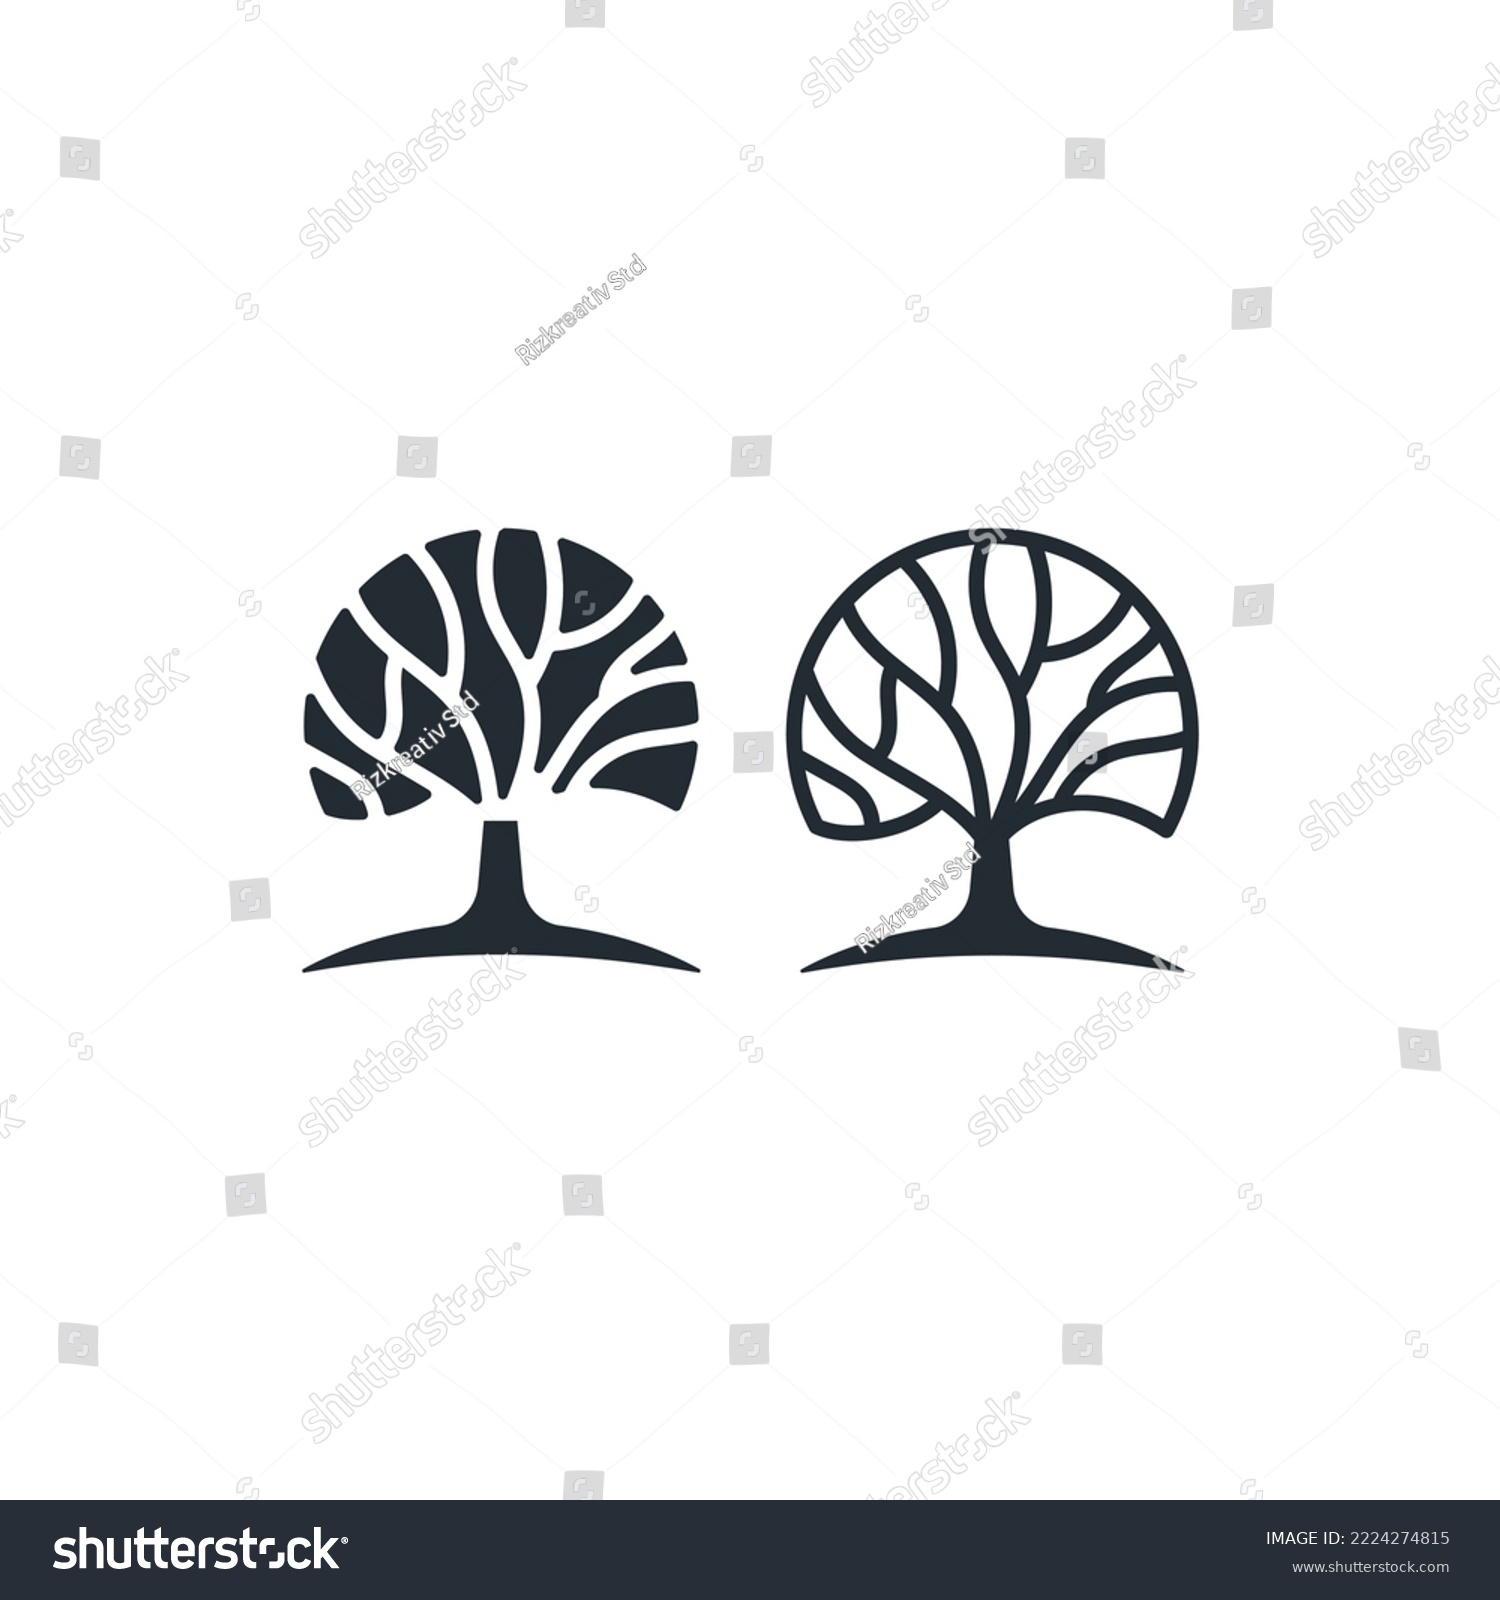 SVG of Oak or banyan tree line art logo icon design vector illustration svg